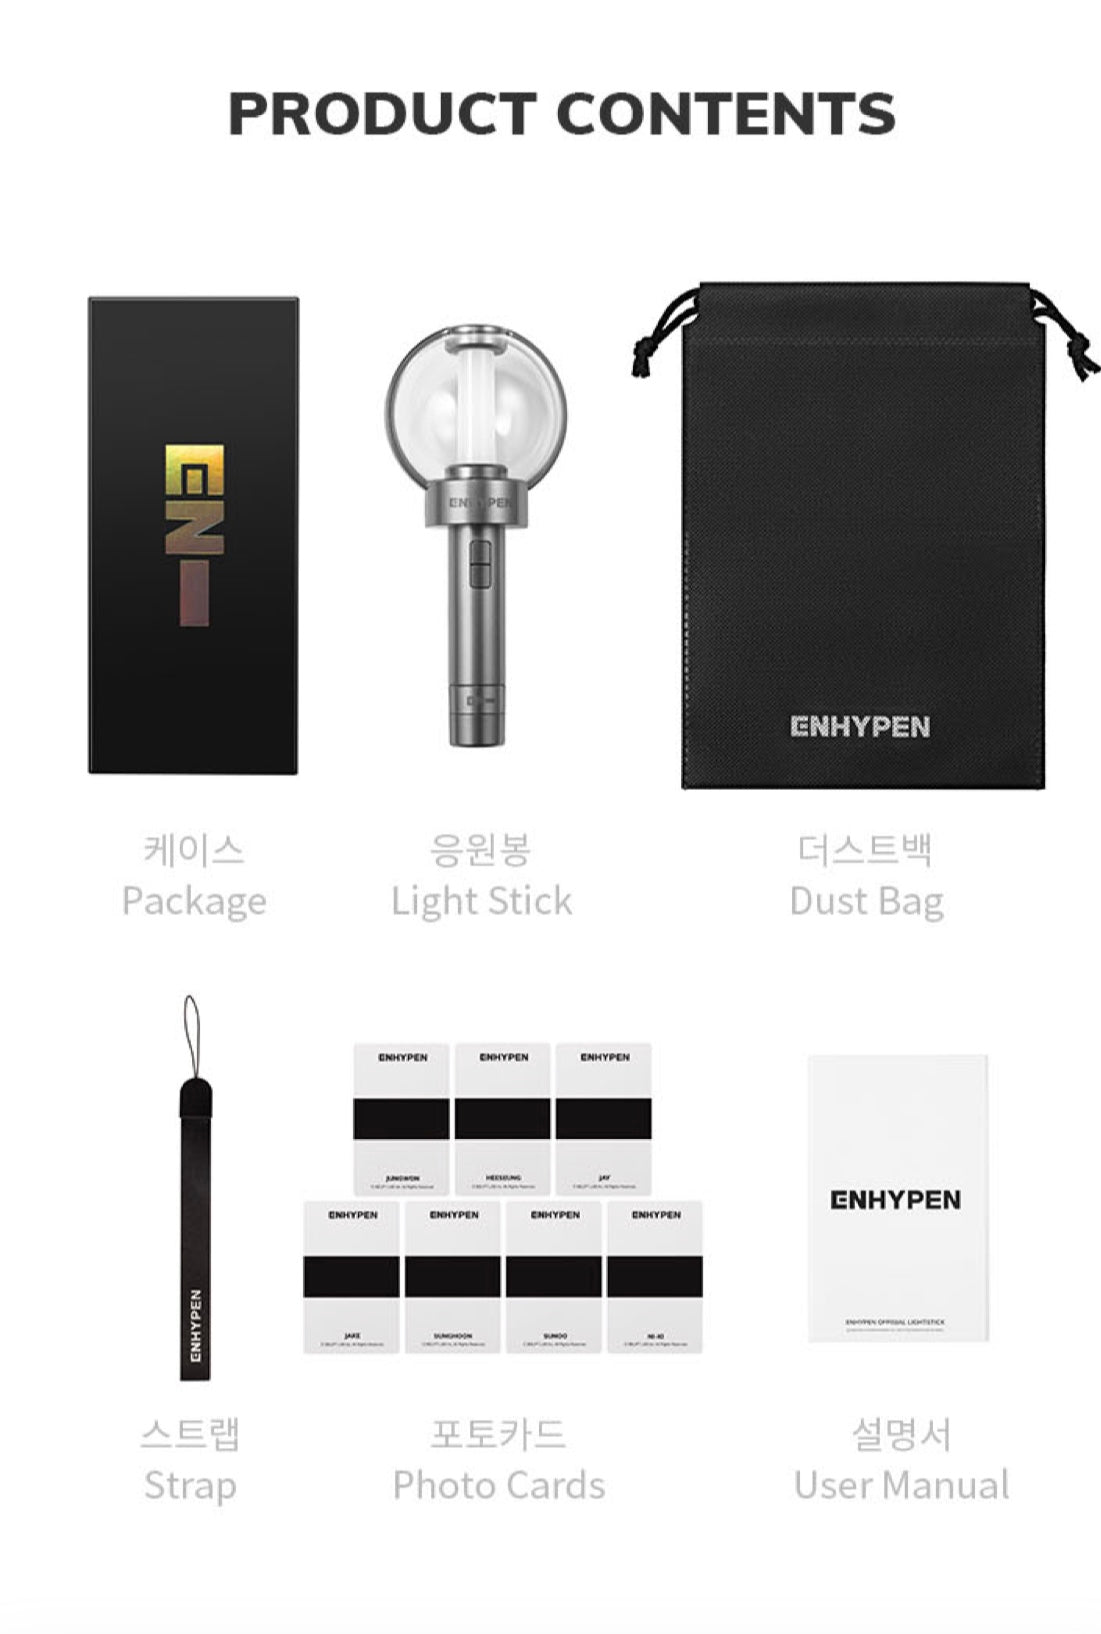 ENHYPEN Official Light Stick